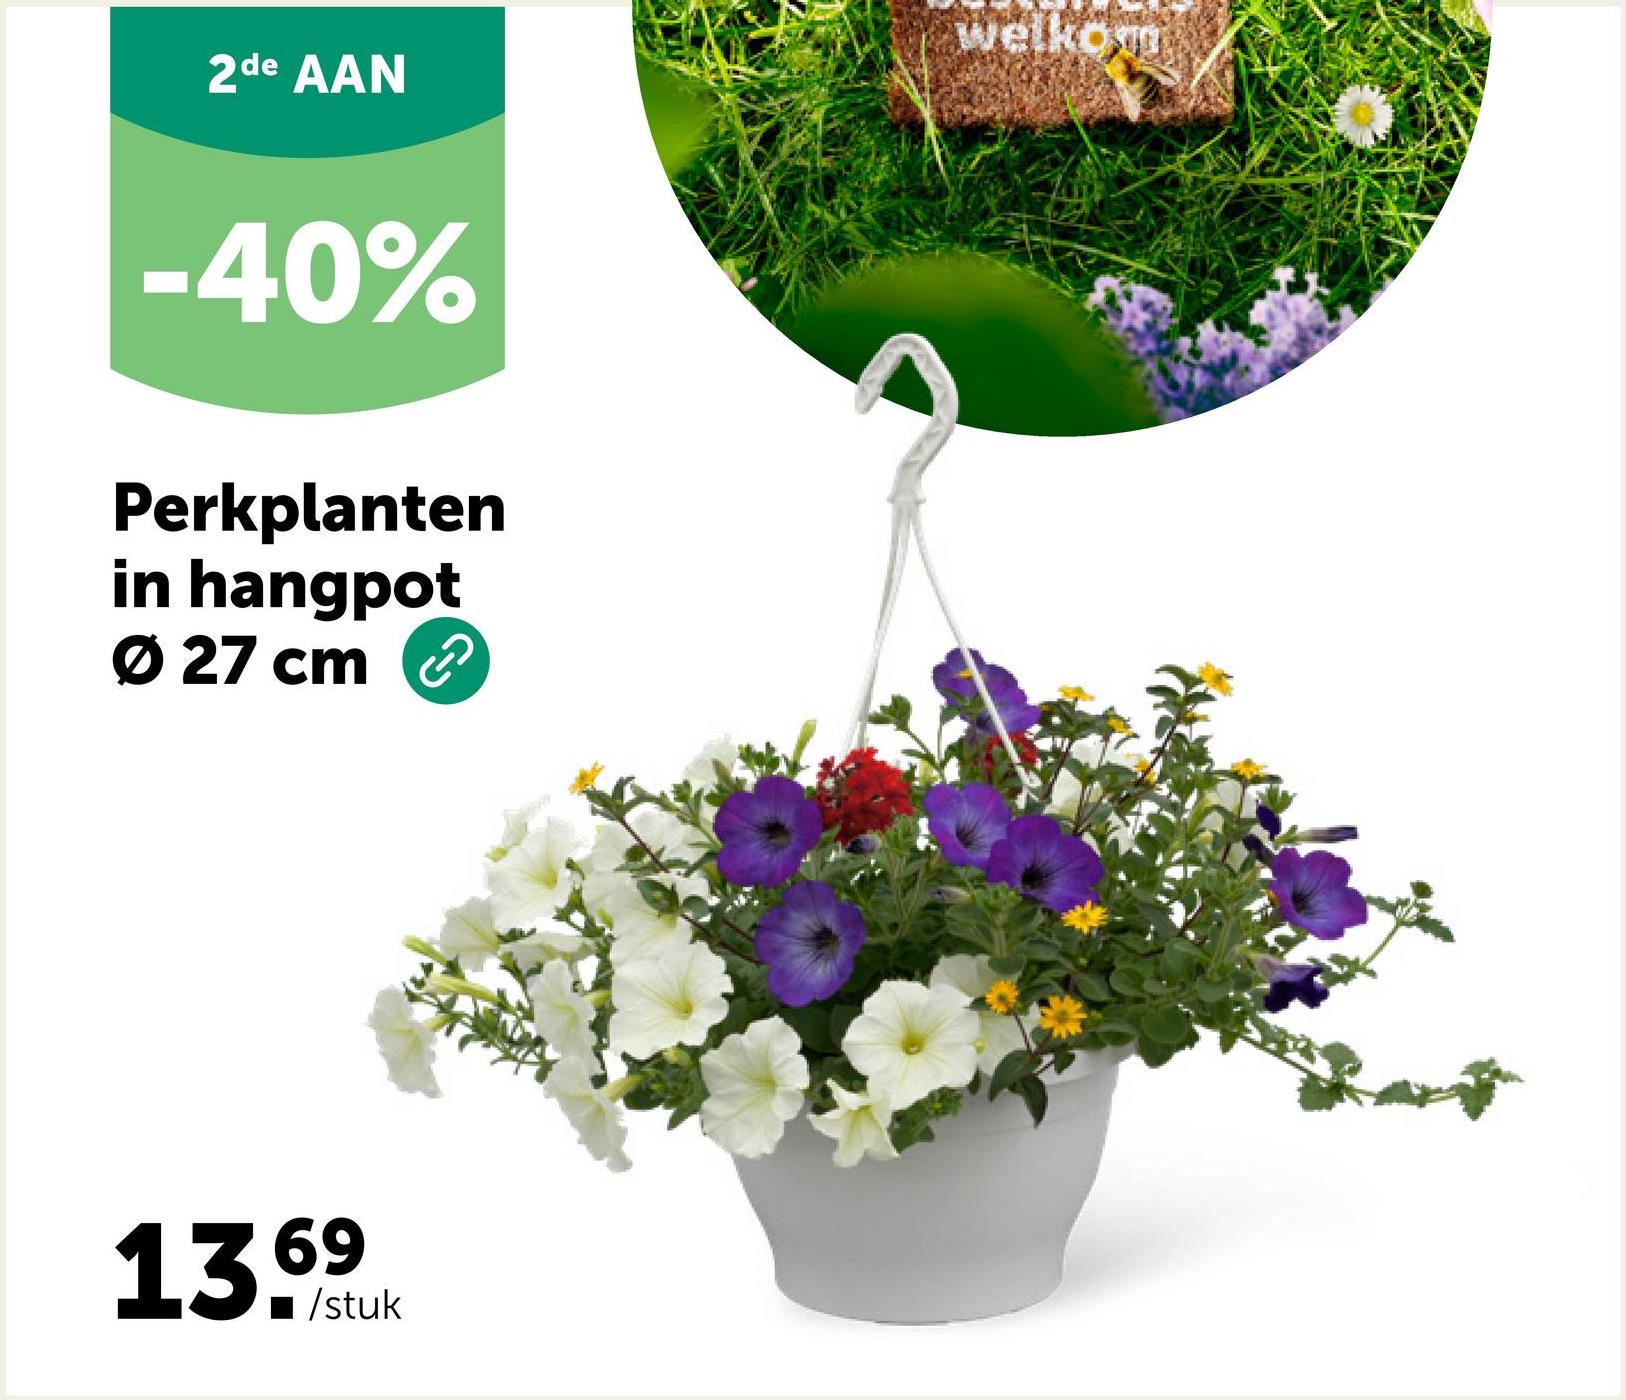 2de AAN
-40%
Perkplanten
in hangpot
Ø 27 cm
13.69
■/stuk
Welkom